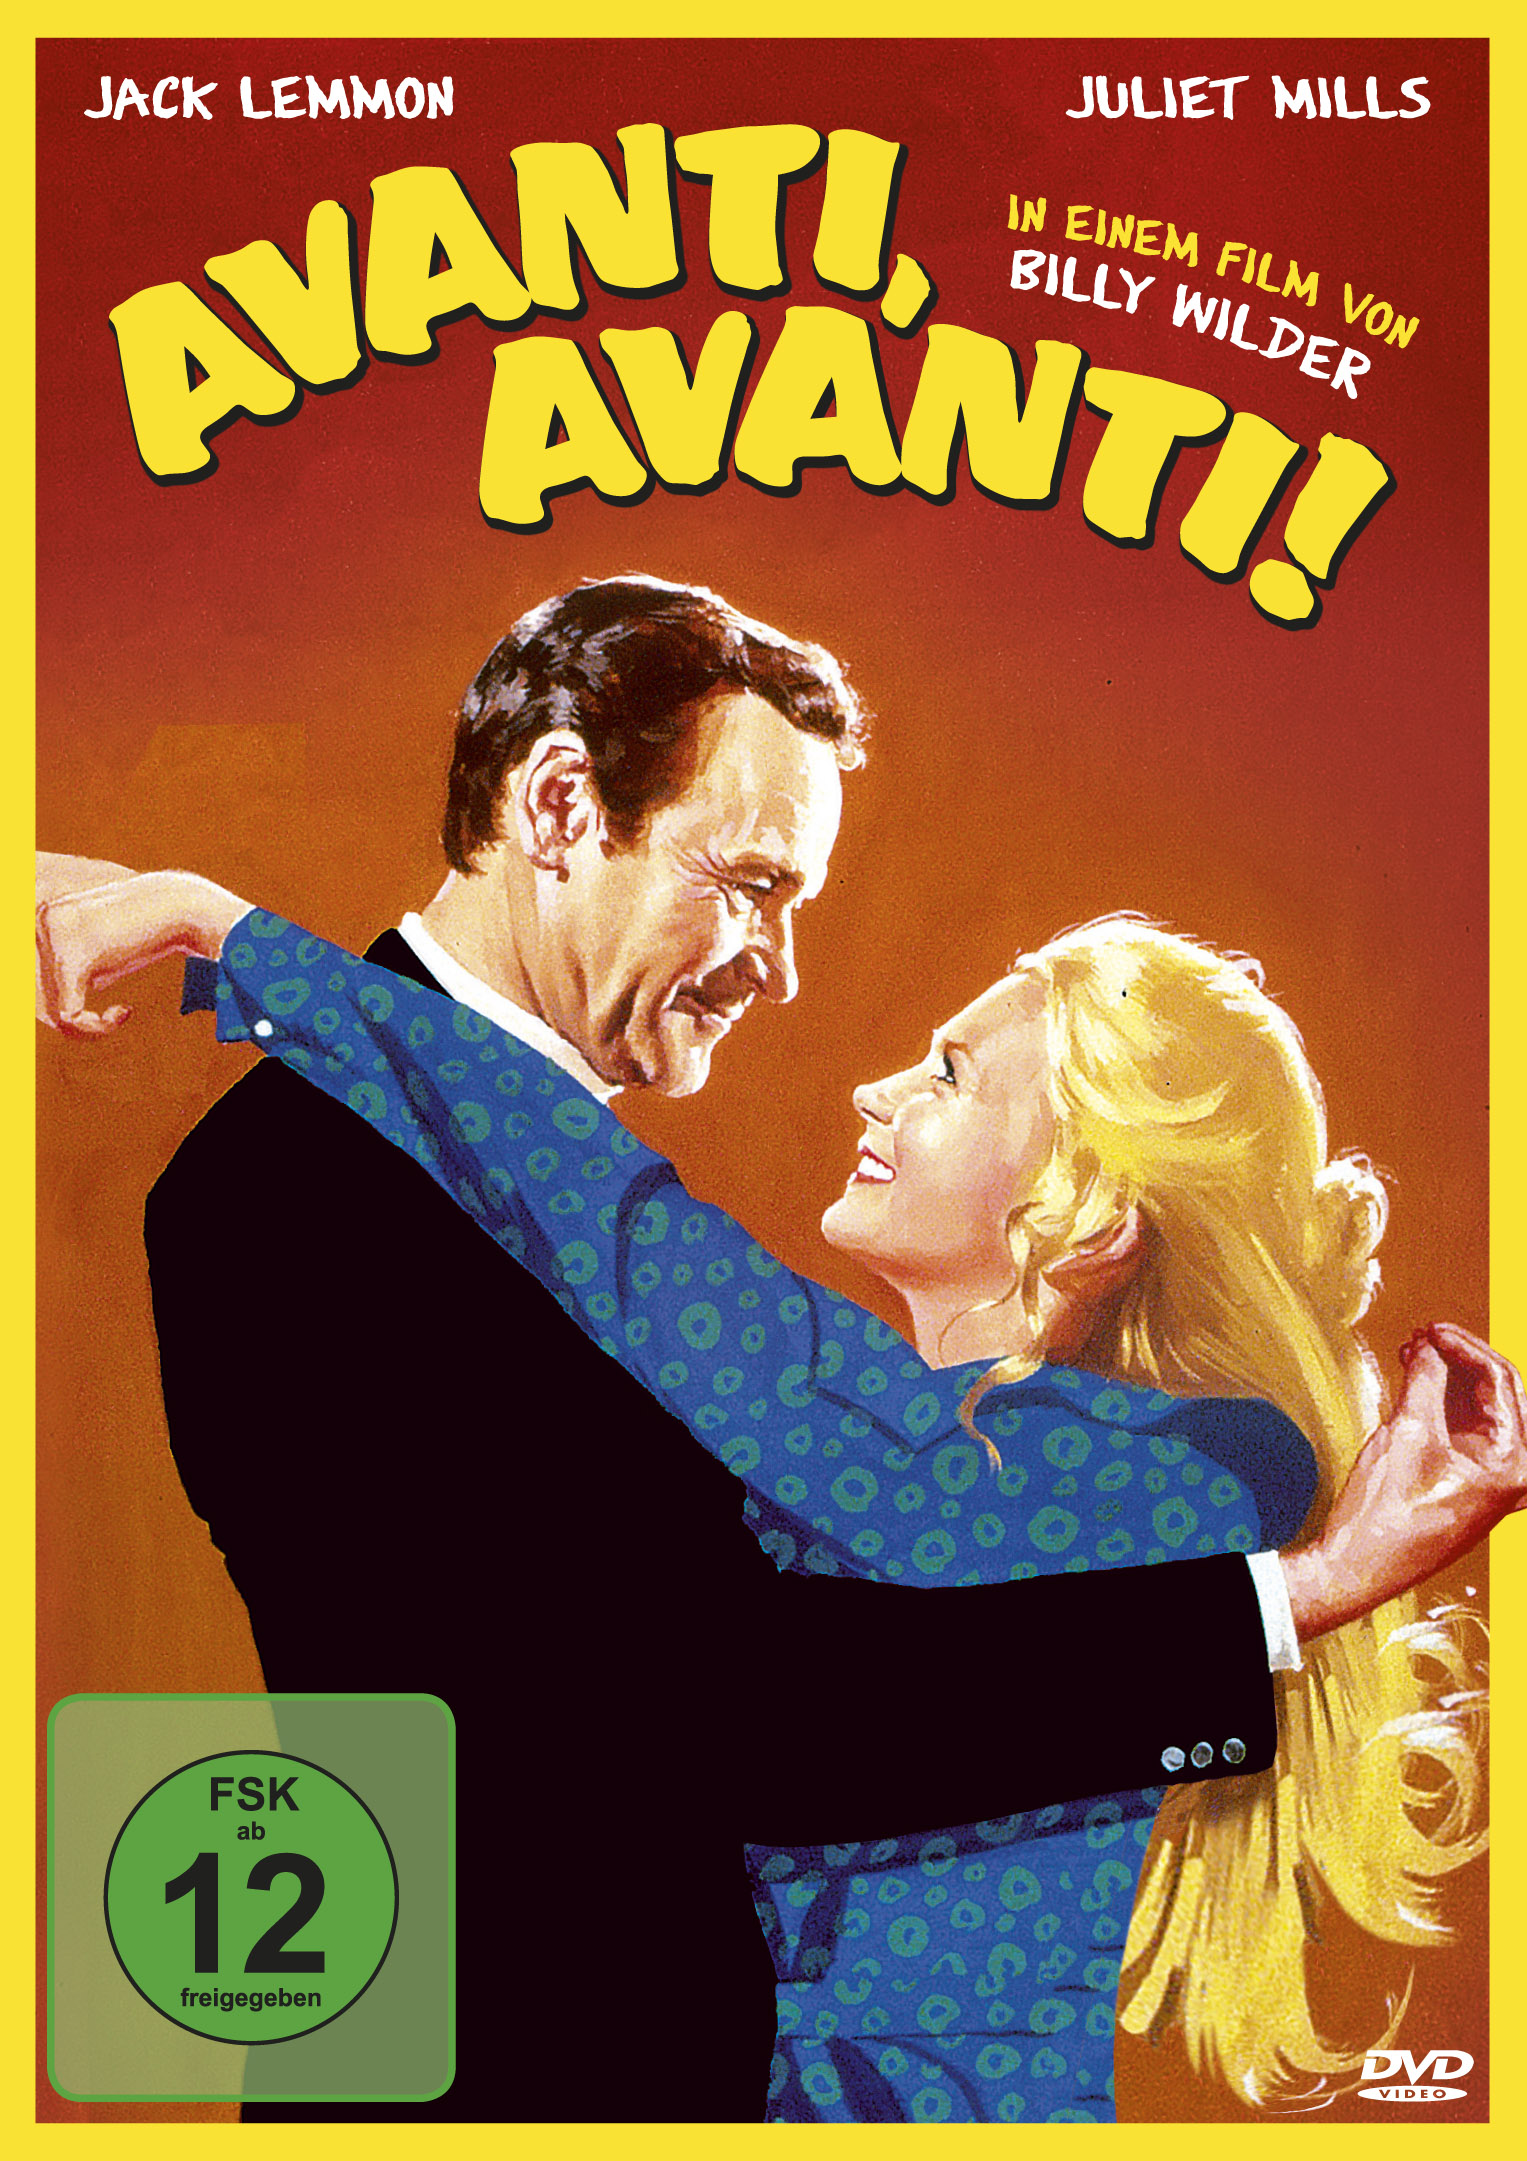 Avanti, Avanti! (DVD) Cover